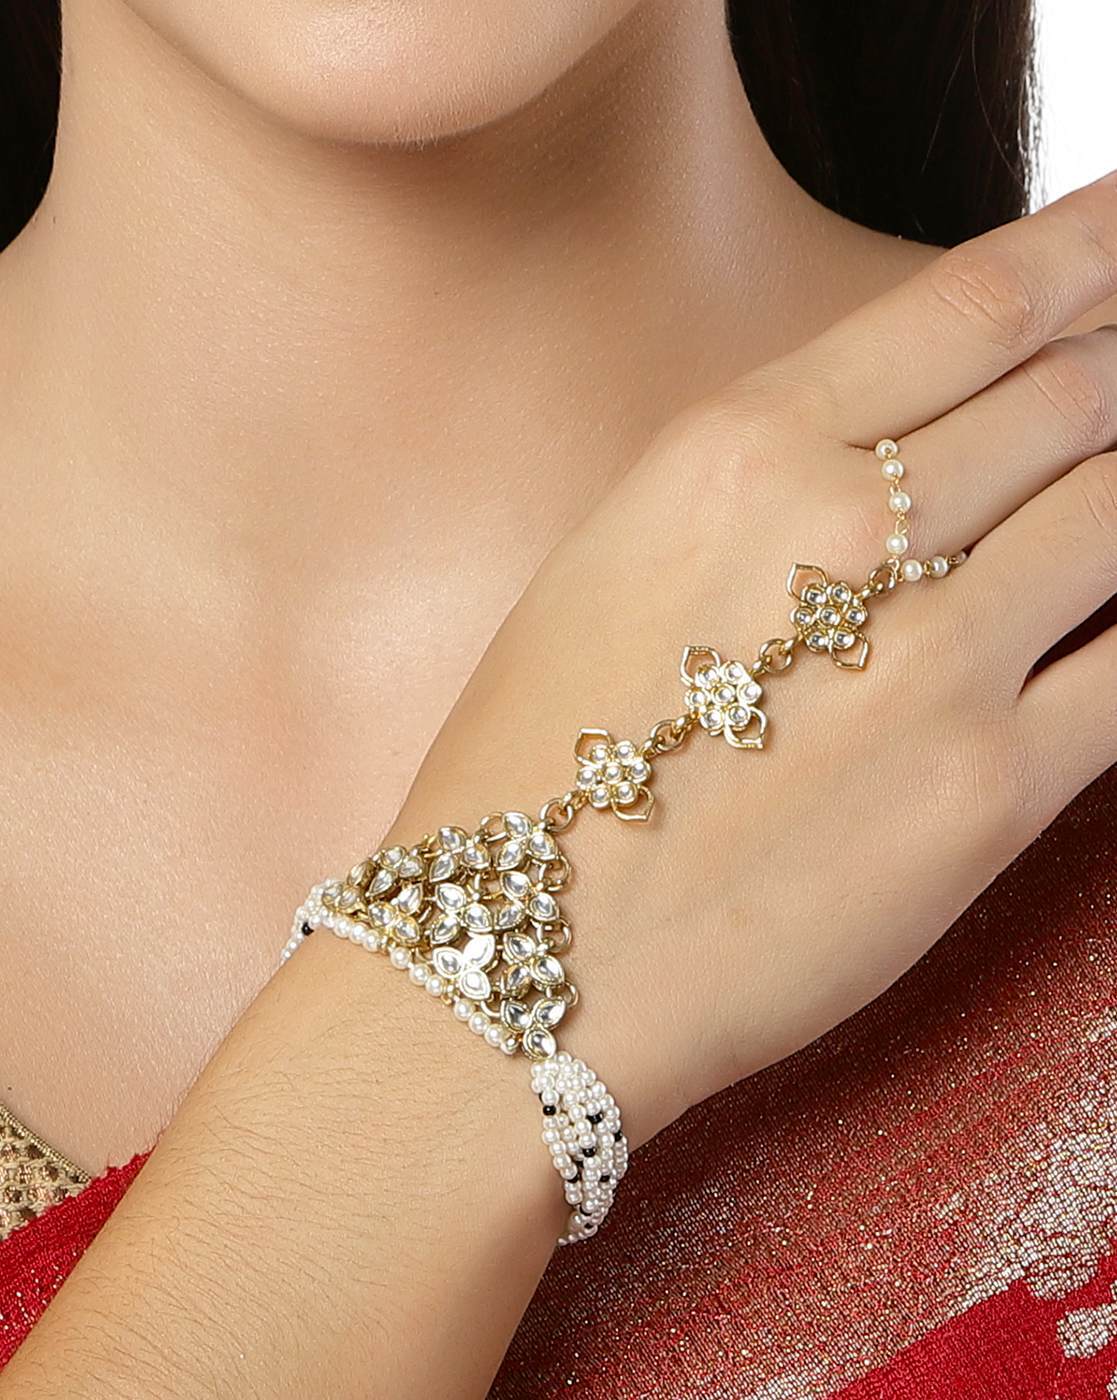 Sipradh Alloy Diamond Gold-plated Ring Bracelet Price in India - Buy  Sipradh Alloy Diamond Gold-plated Ring Bracelet Online at Best Prices in  India | Flipkart.com